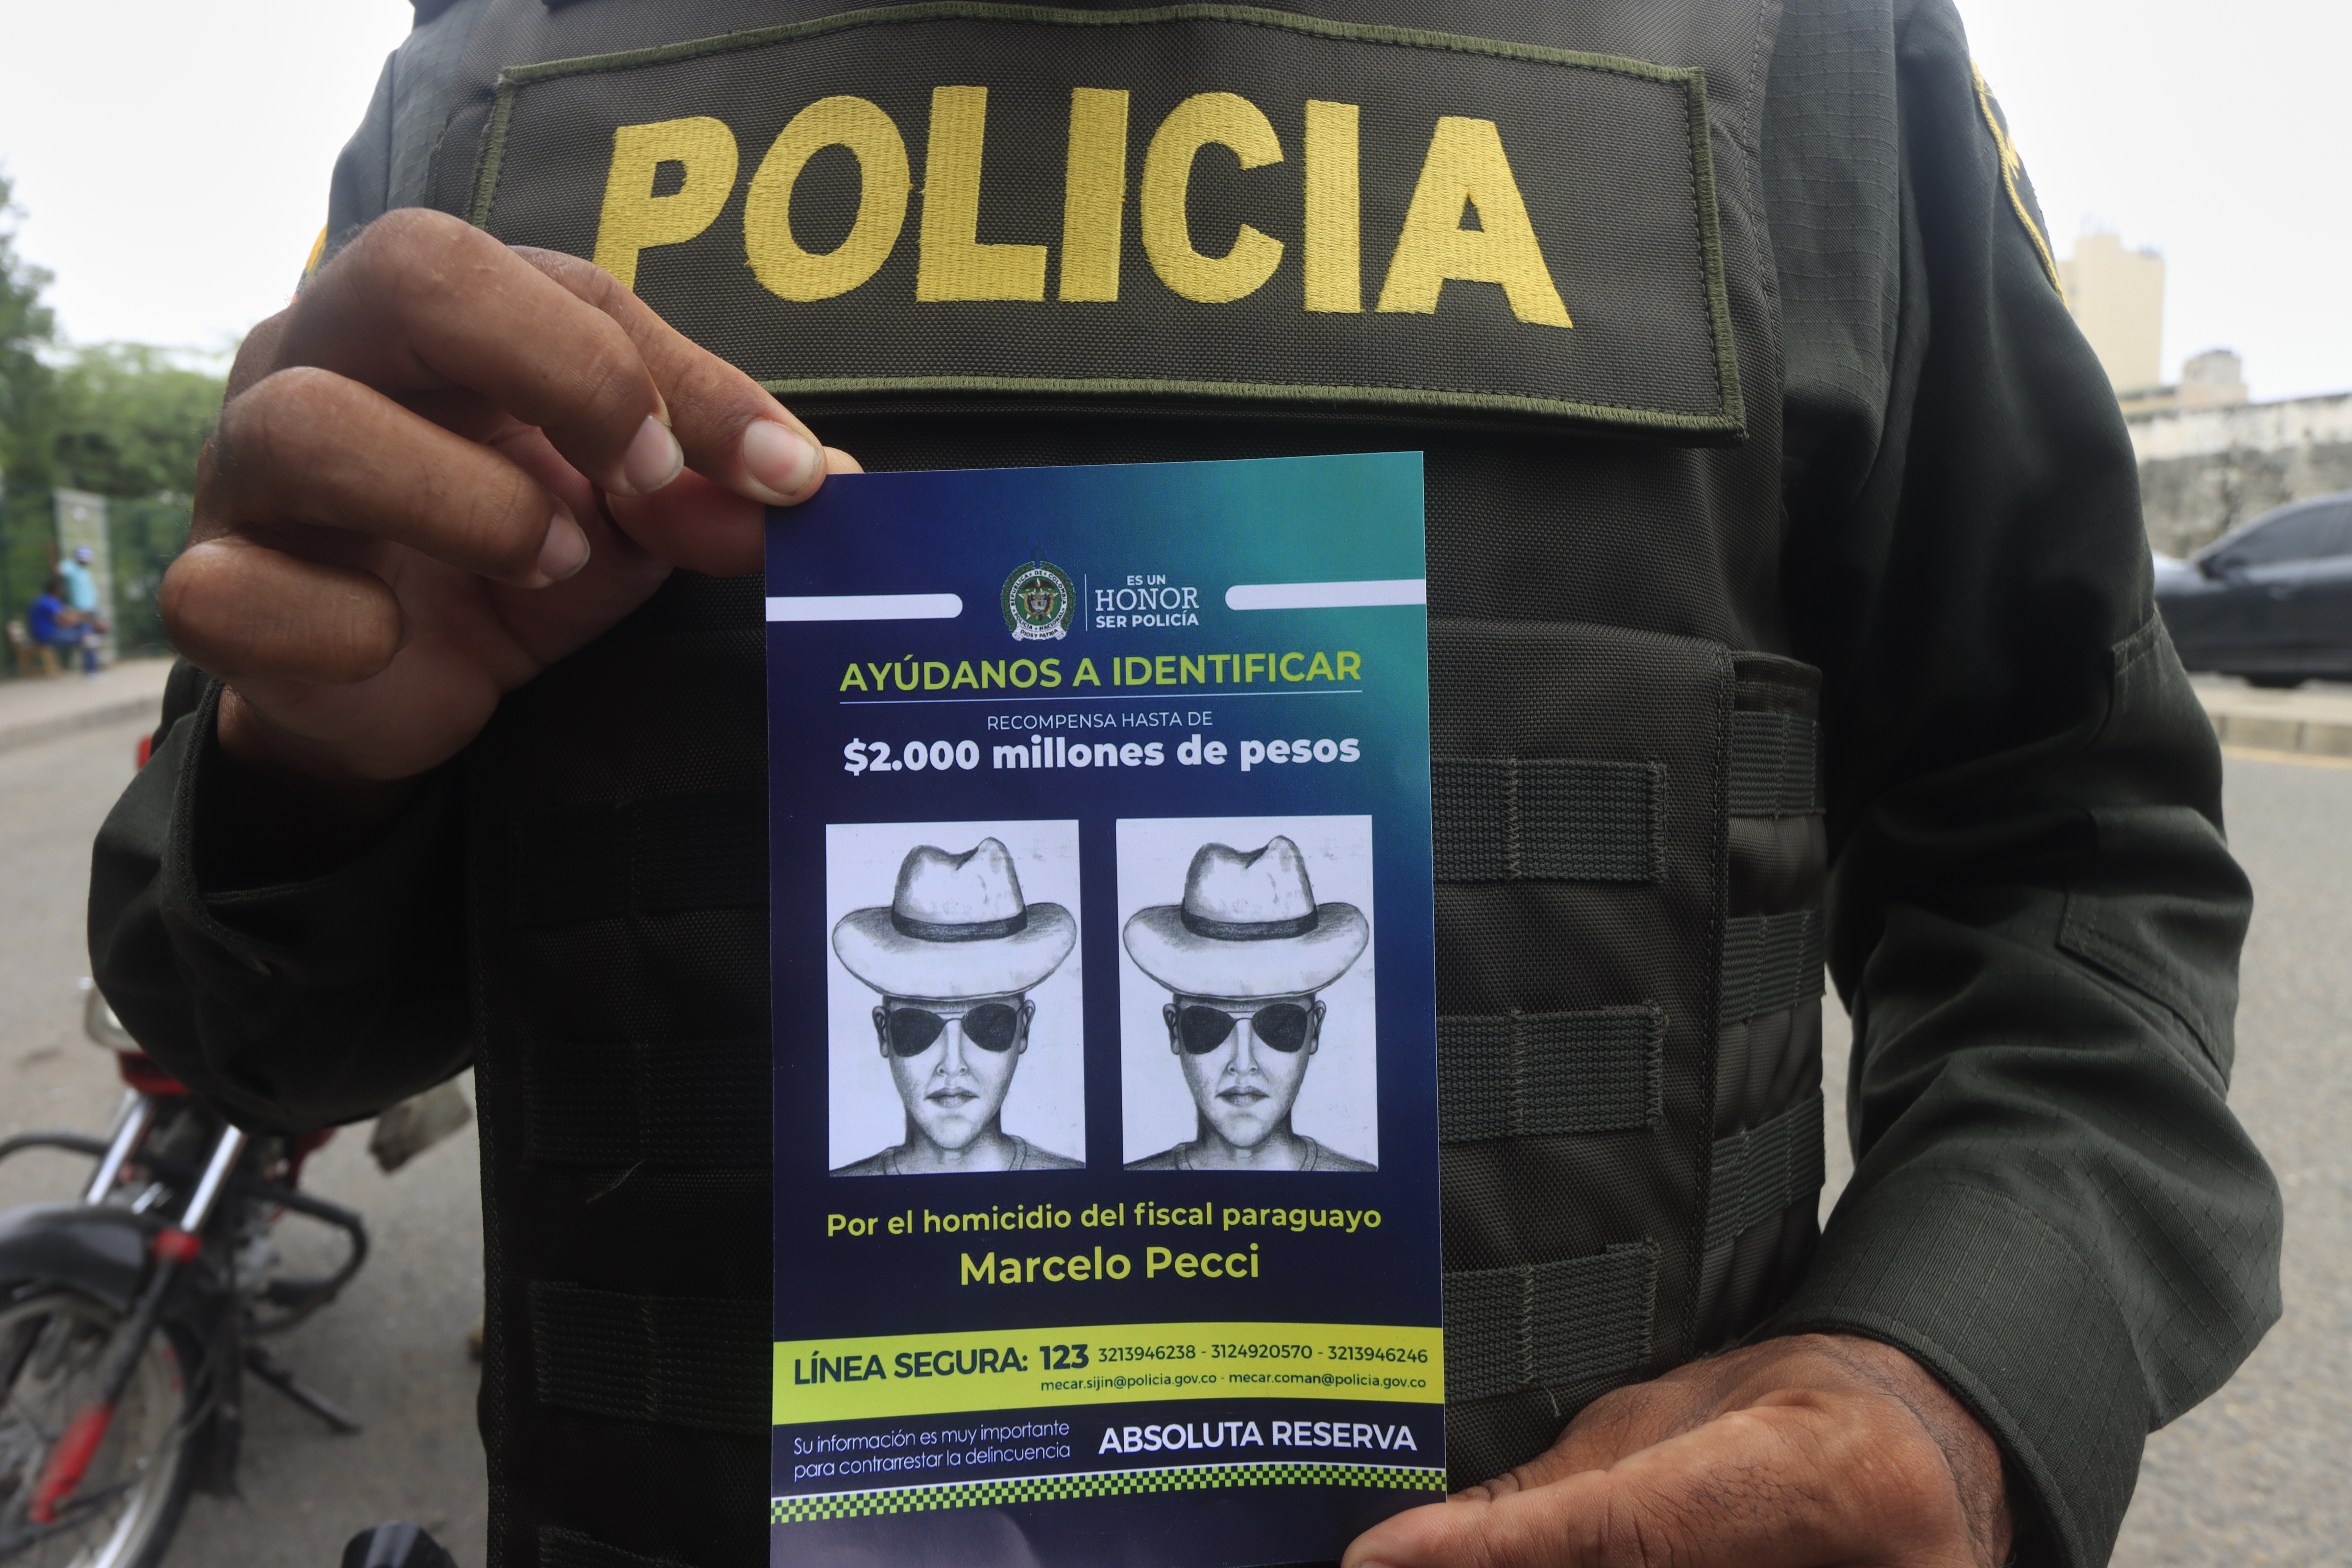 La Policía colombiana sigue tras los asesinos del fiscal paraguayo, Marcelo Pecci